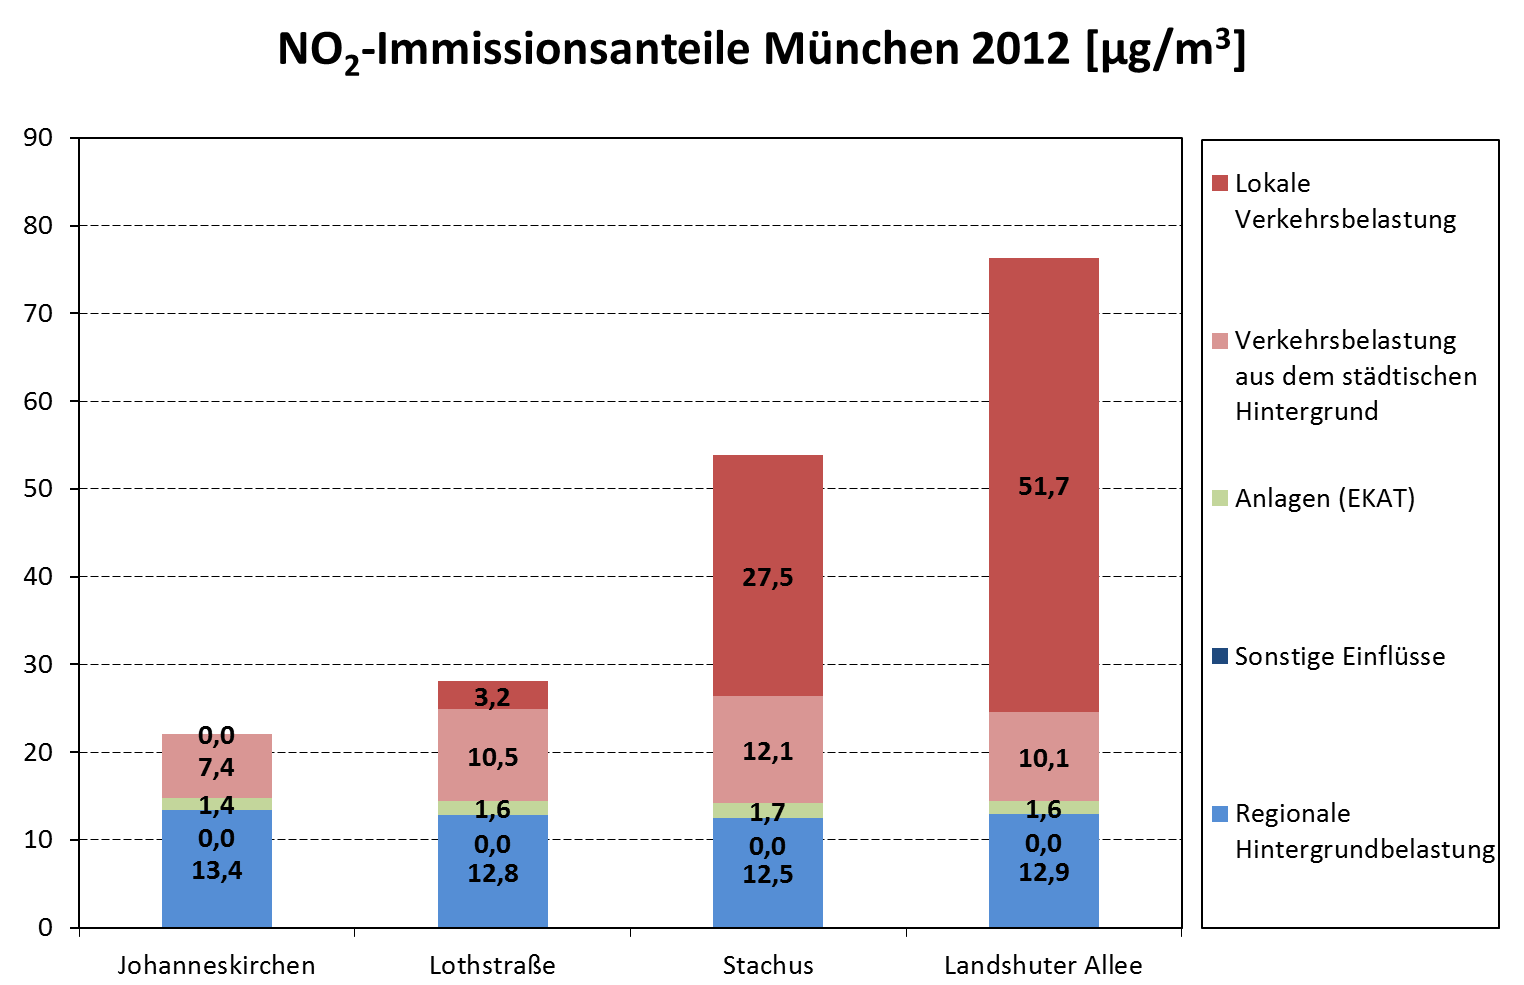 NO2-Immissionsanteile München 2012 in Mykrogrammpro Kubikmeter